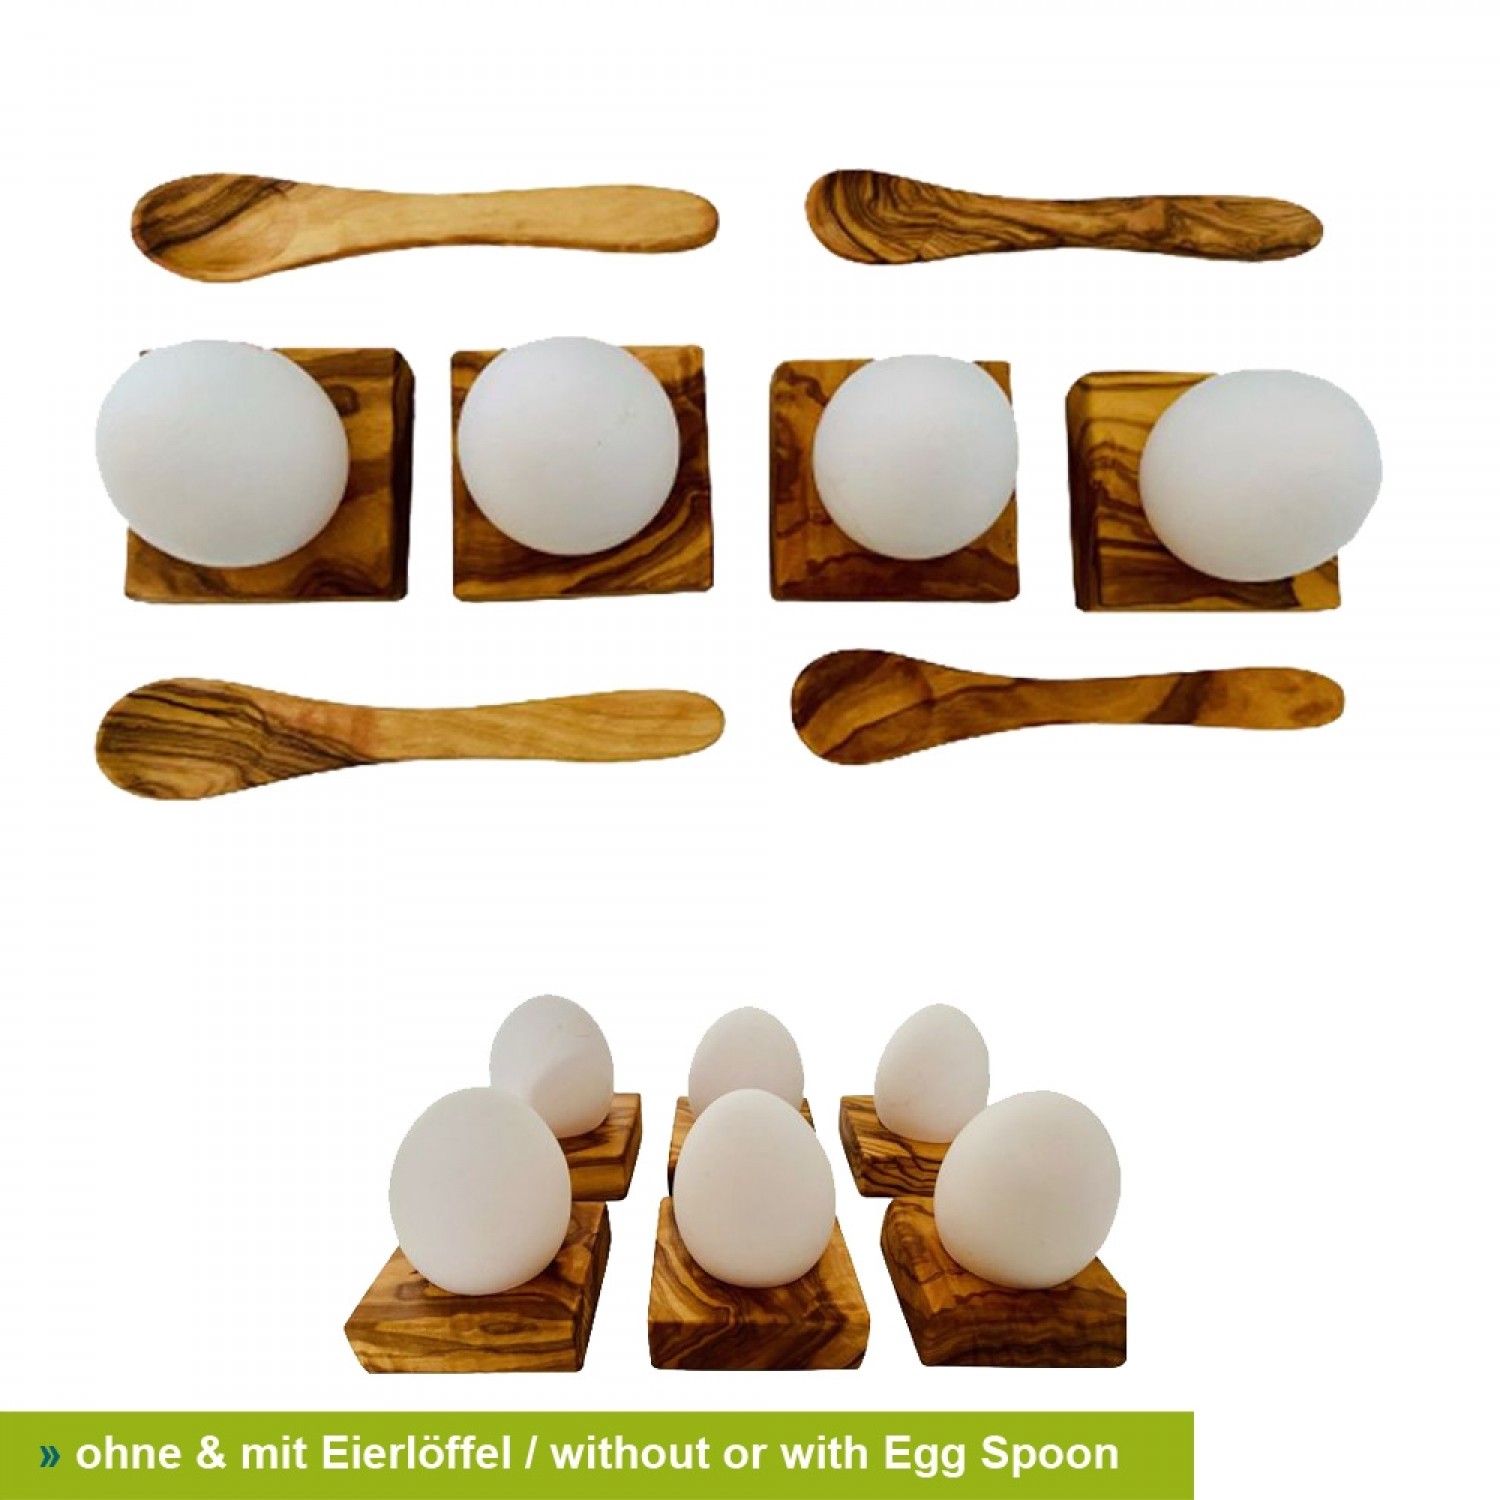 Durable Egg Holder Siena - Olive Wood » D.O.M.